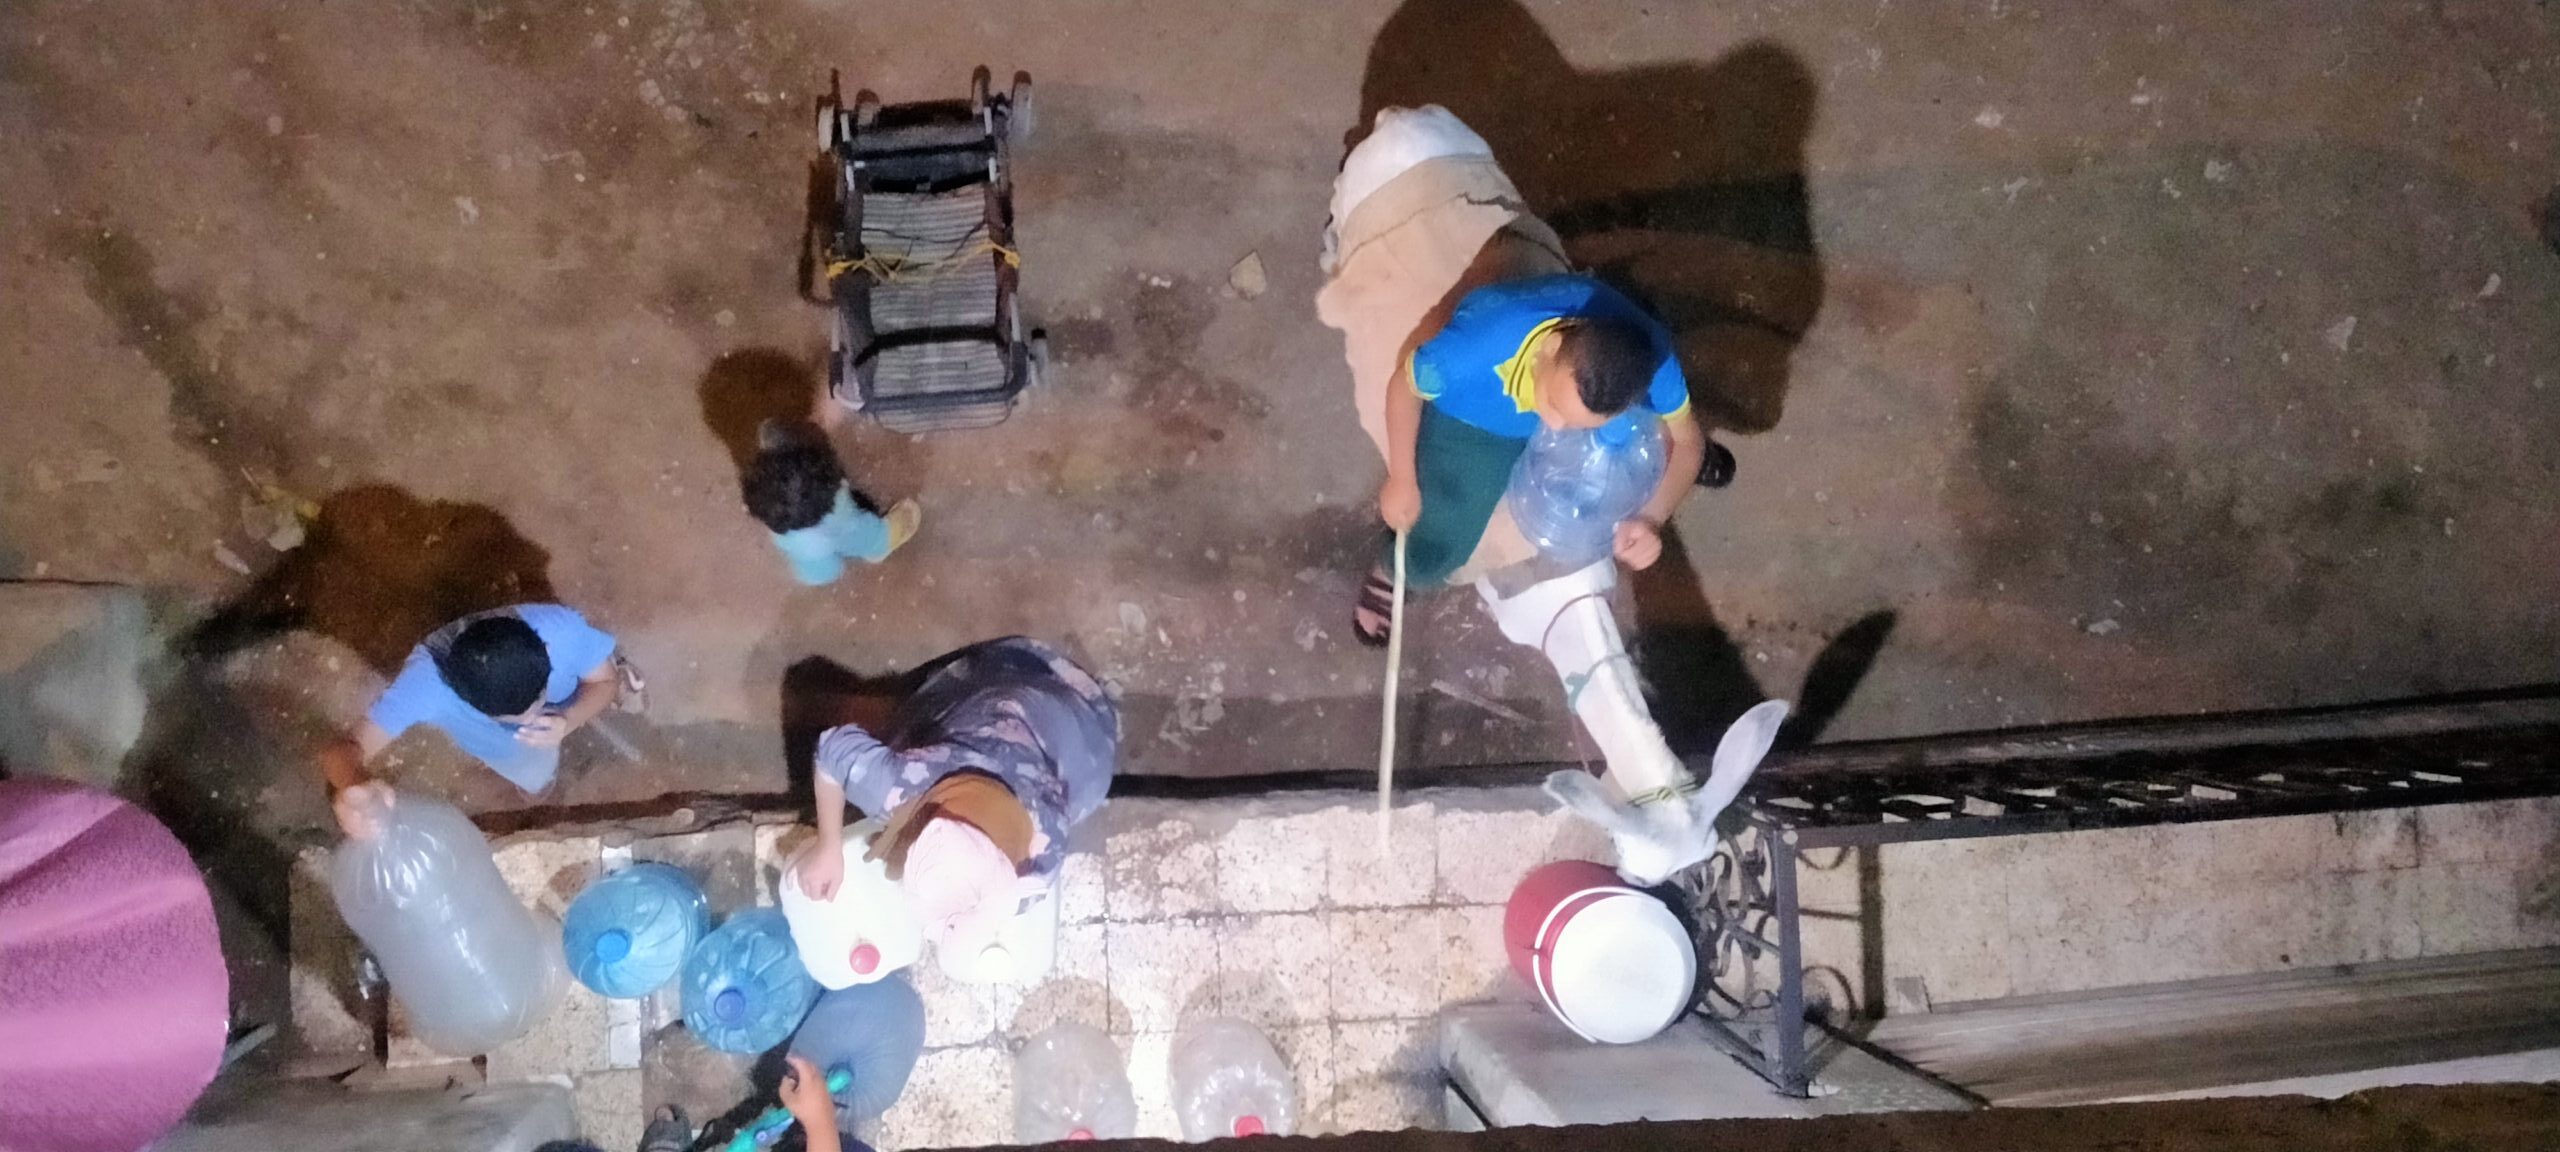 في الليل الأطفال والنساء يشترون المياه من محطة مياه خاصة